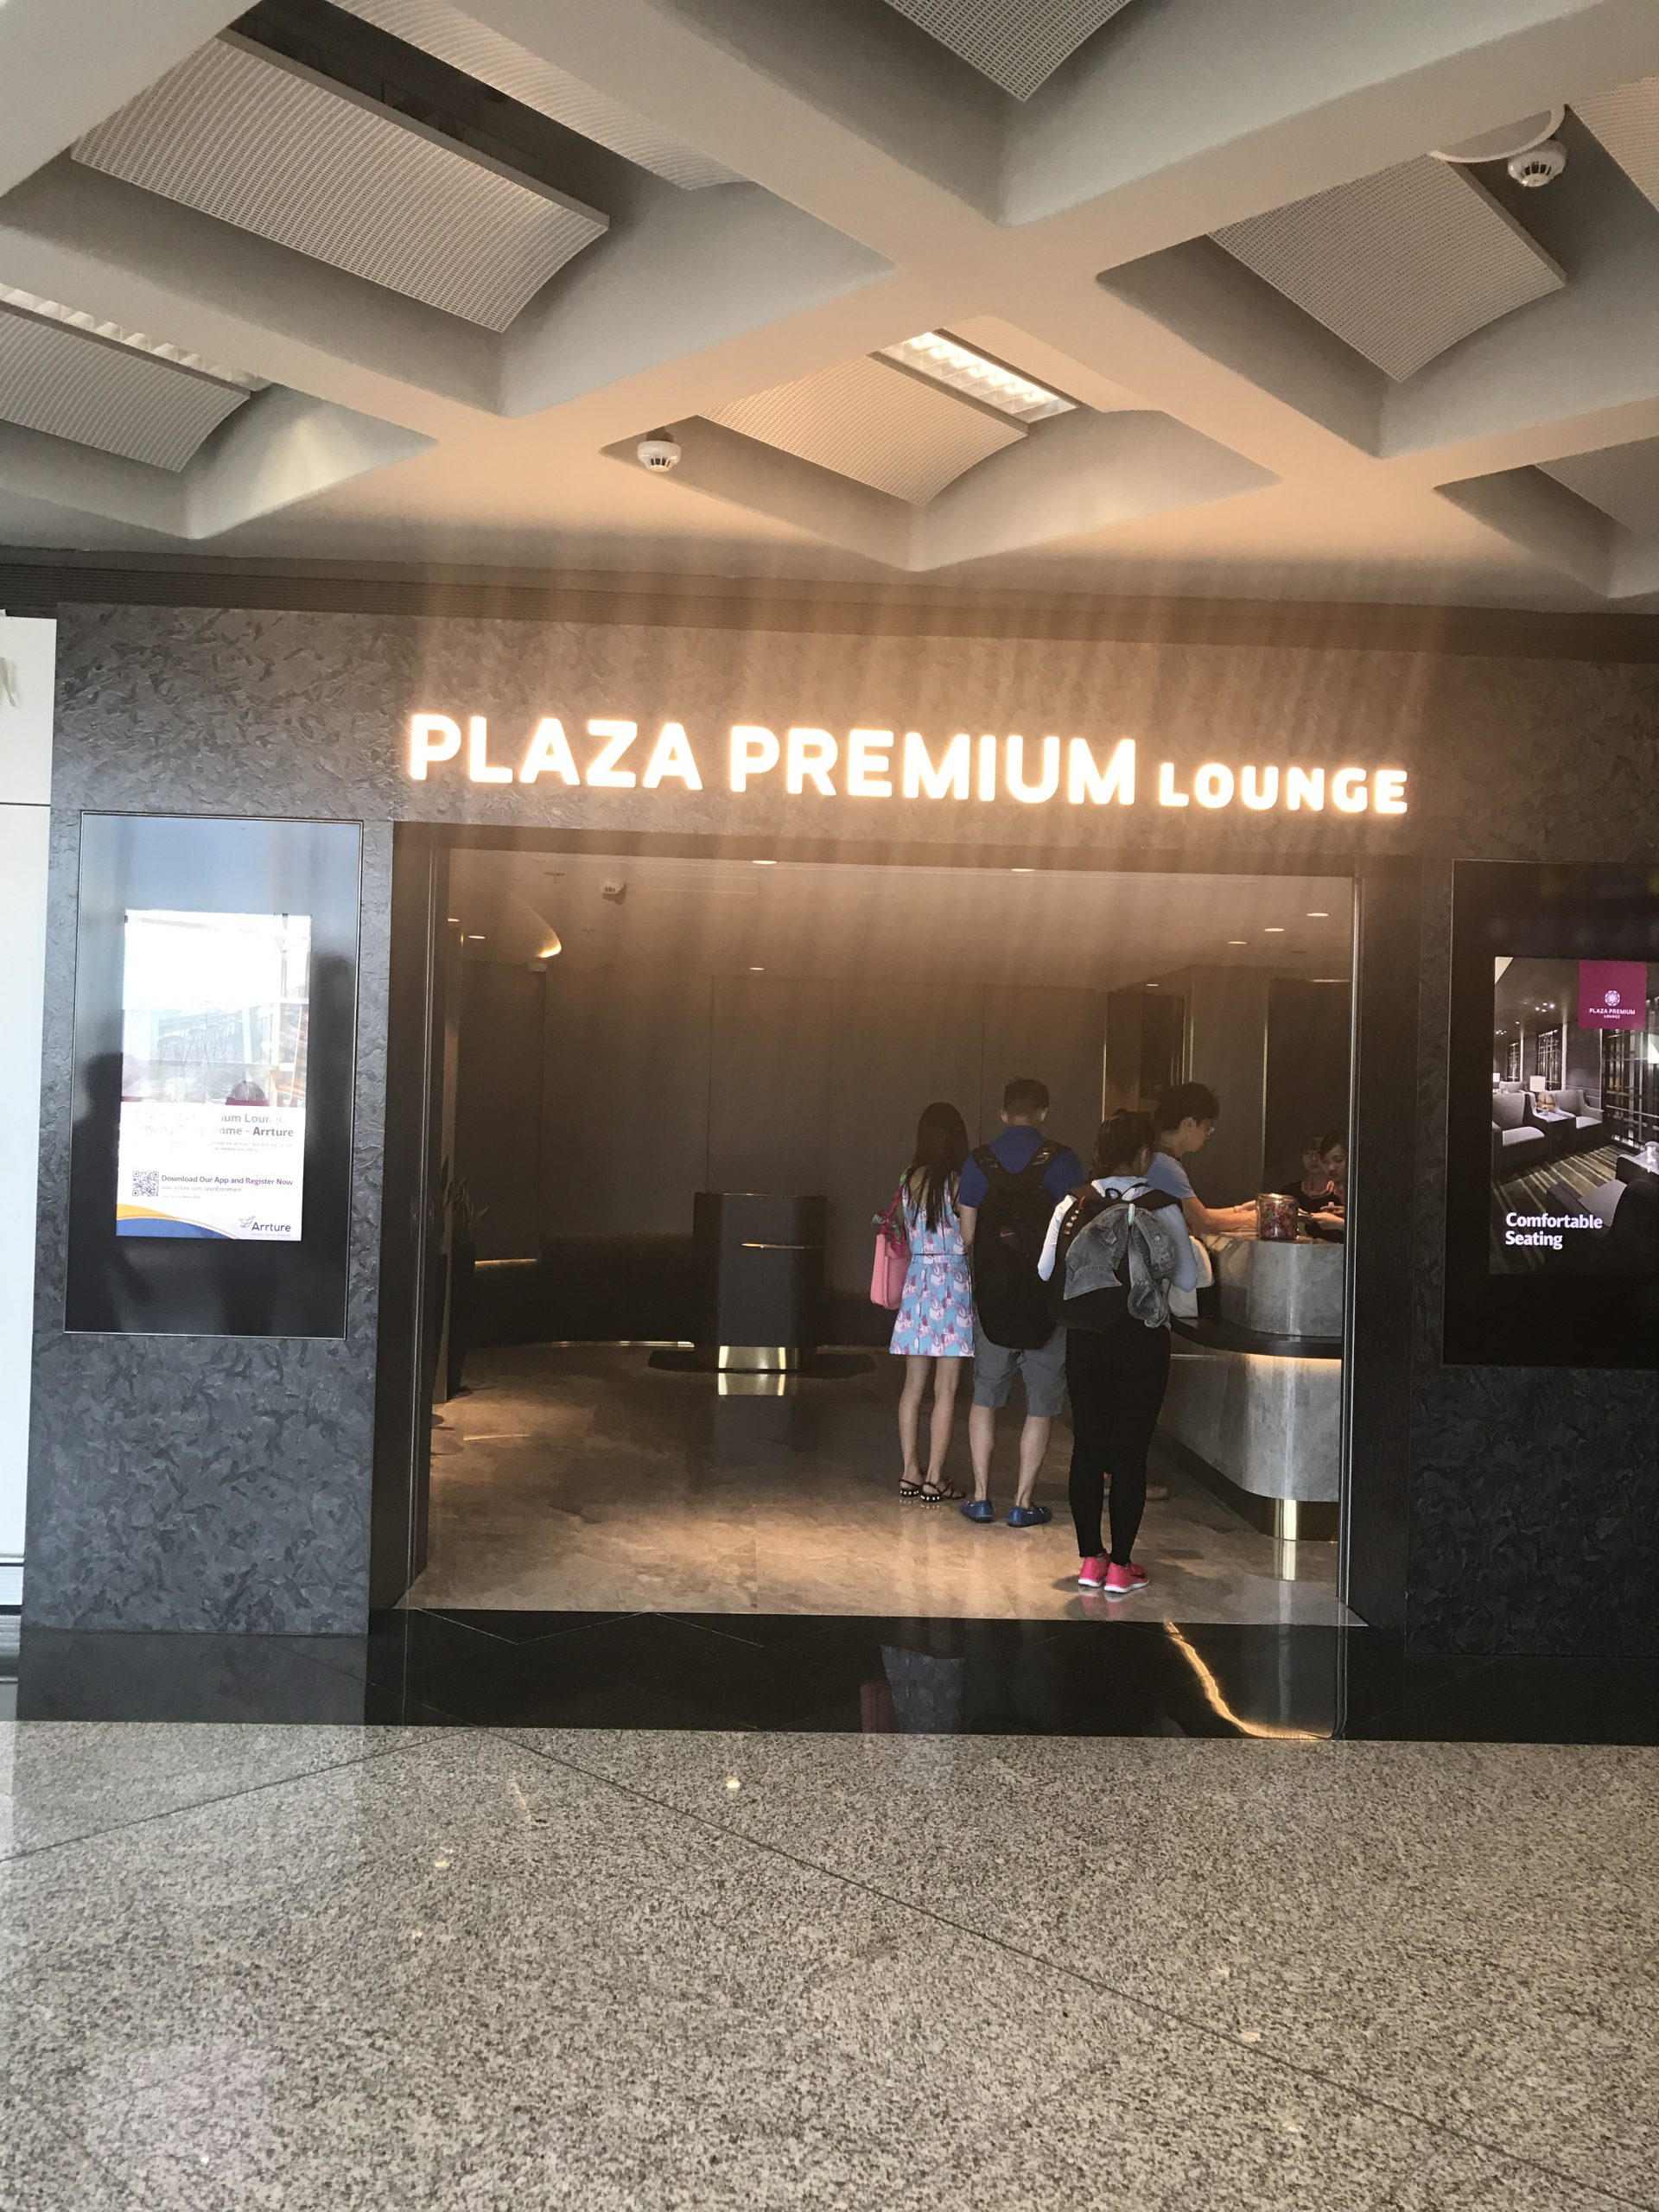 環亞貴賓室  Plaza Premium Lounge Gate 1！最經期既魚蛋粉lounge！體驗及免費入lounge方法！